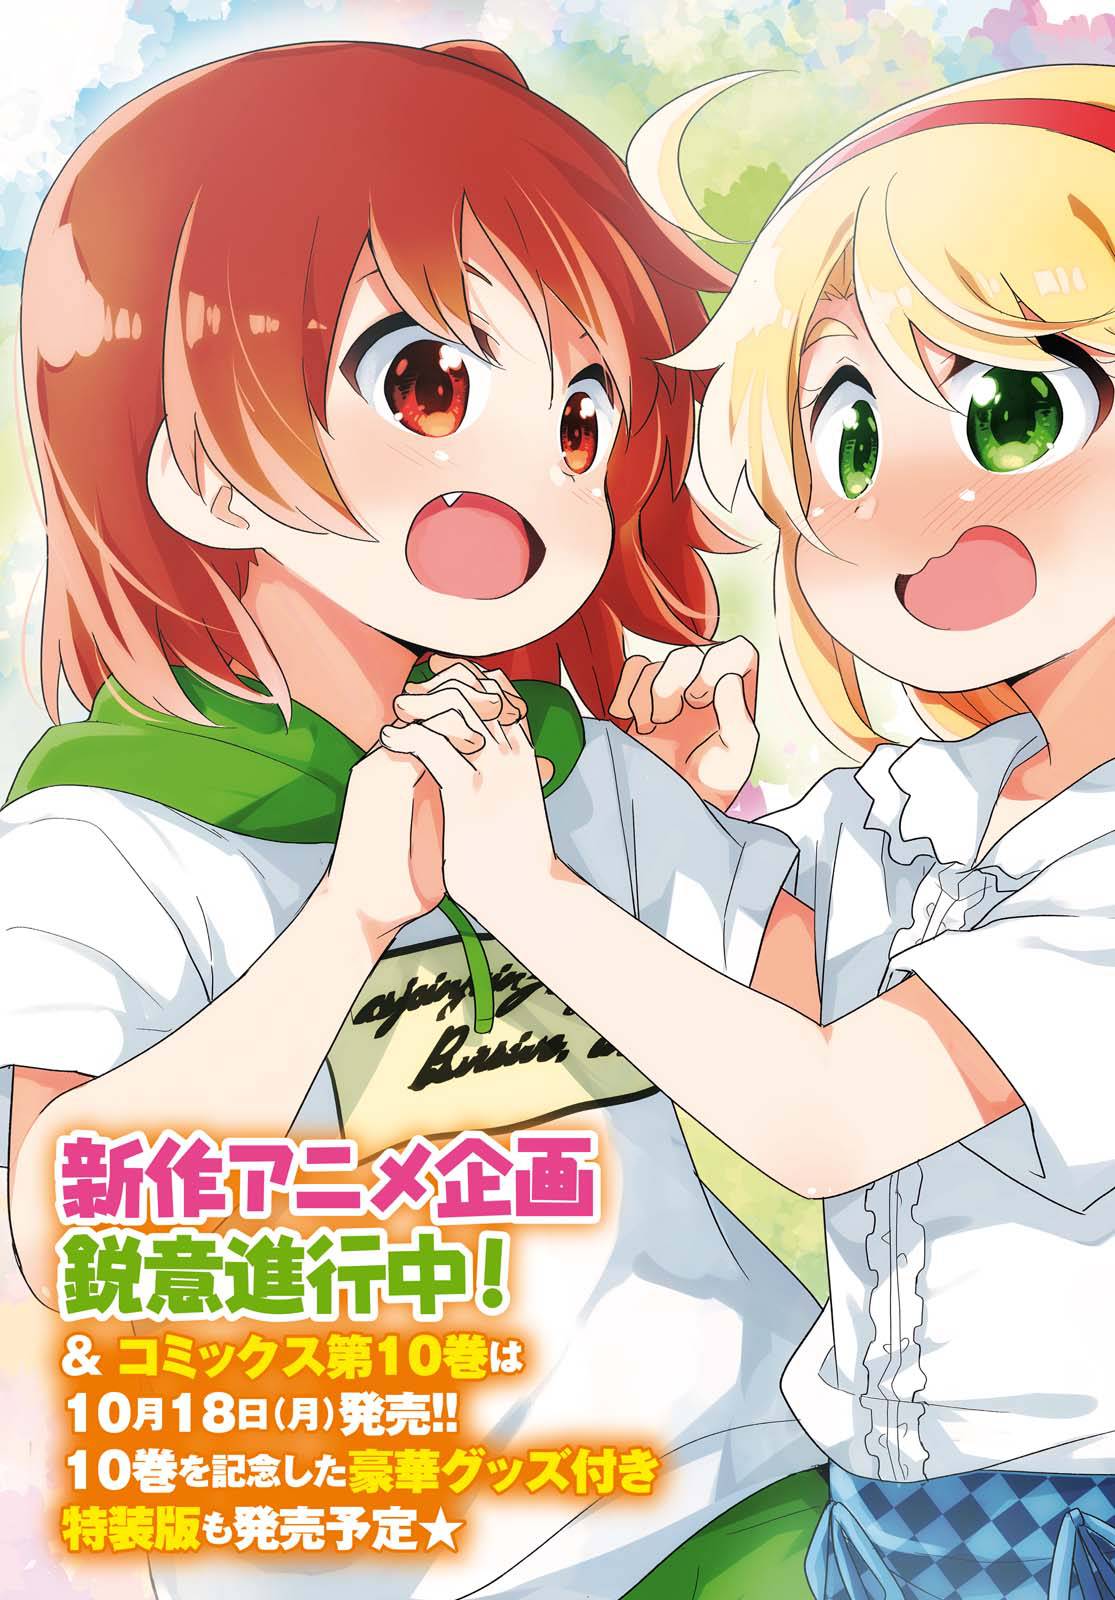 Read Watashi Ni Tenshi Ga Maiorita! Chapter 86 - Manganelo